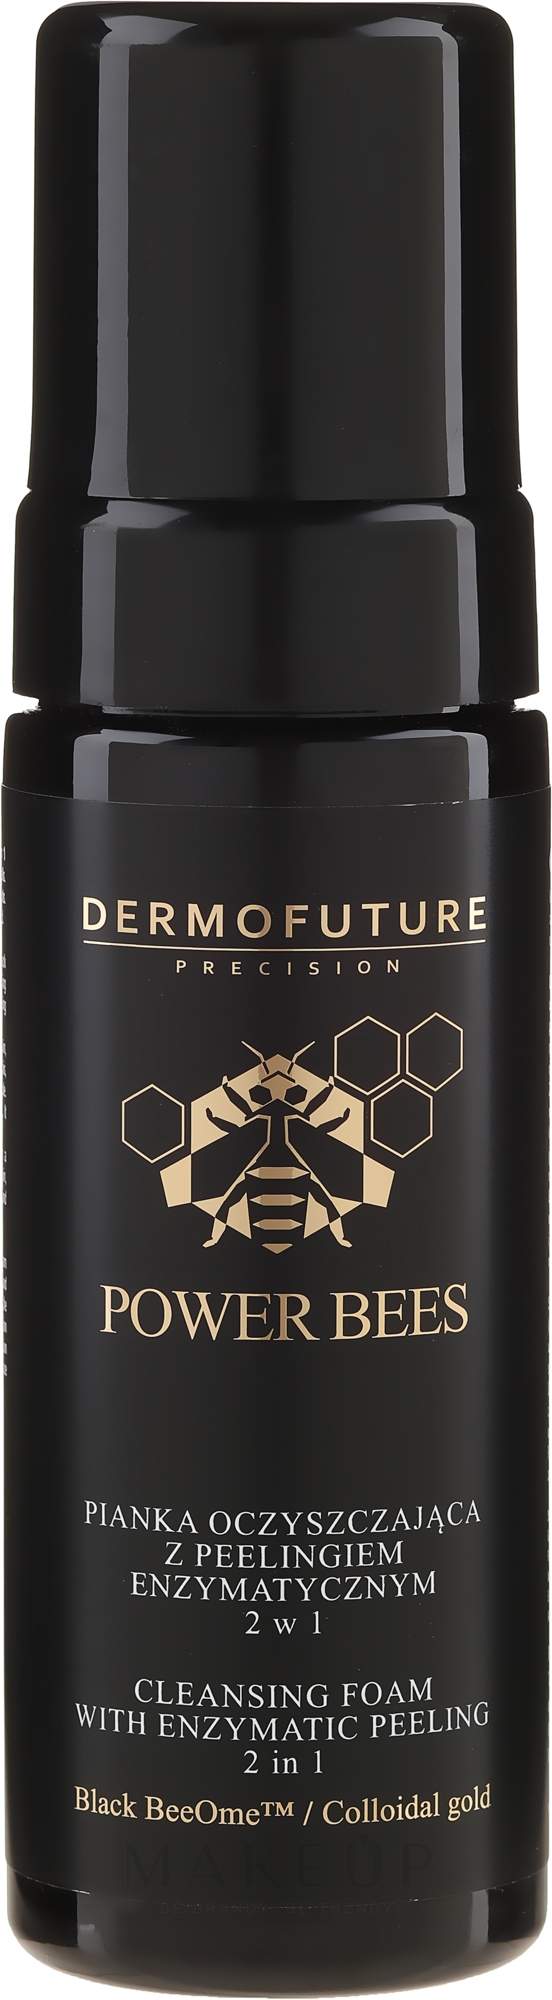 Gesichtsreinigungsschaum mit Enzympeeling - Dermofuture Power Bees Cleansing Foam 2in1 — Bild 150 ml